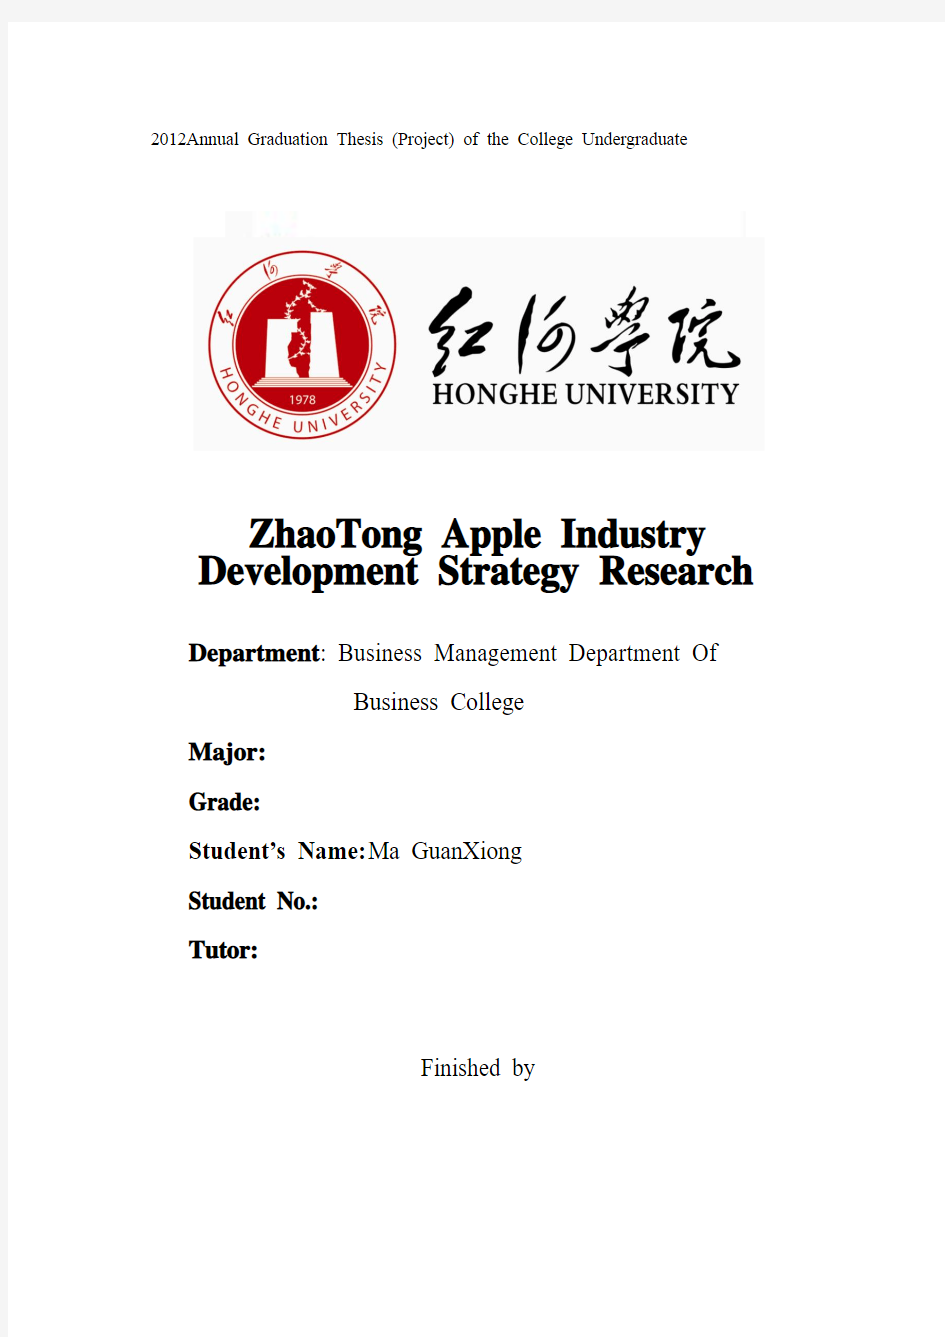 昭通苹果产业发展战略研究